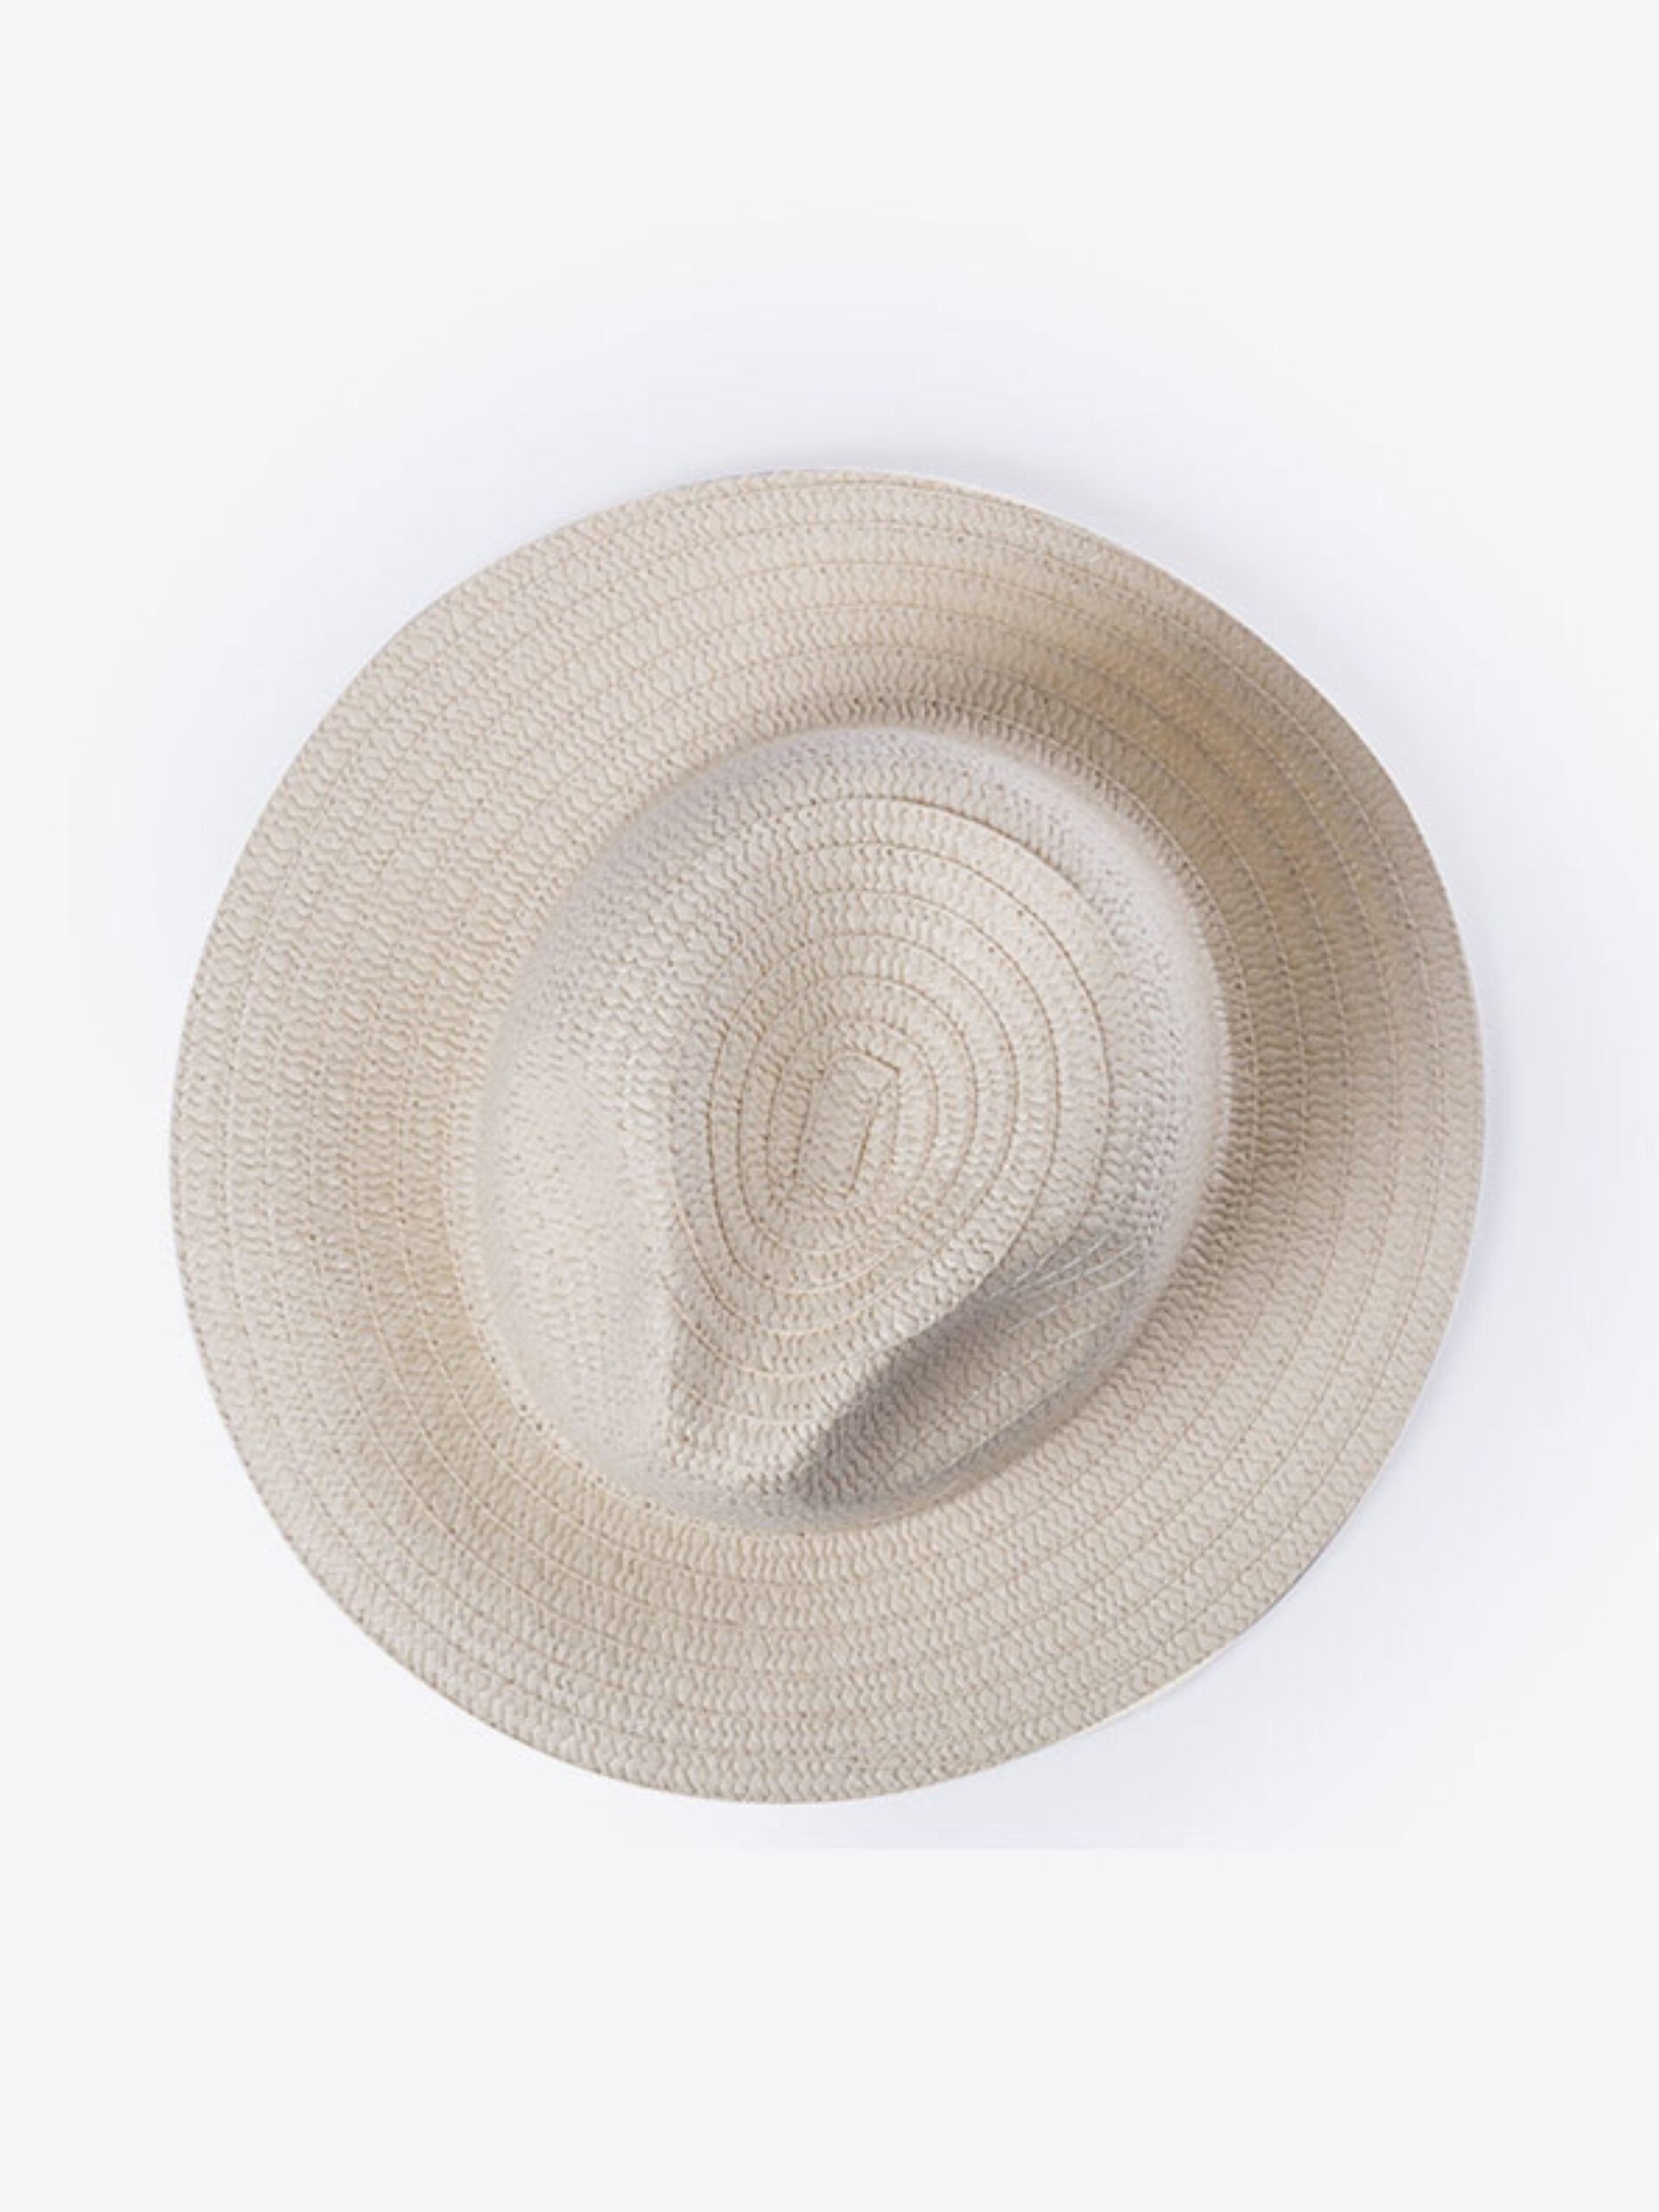 Strohhut Panama Hutband Mit Logo Werbung Bedrucken Papierstroh Werbeartikel